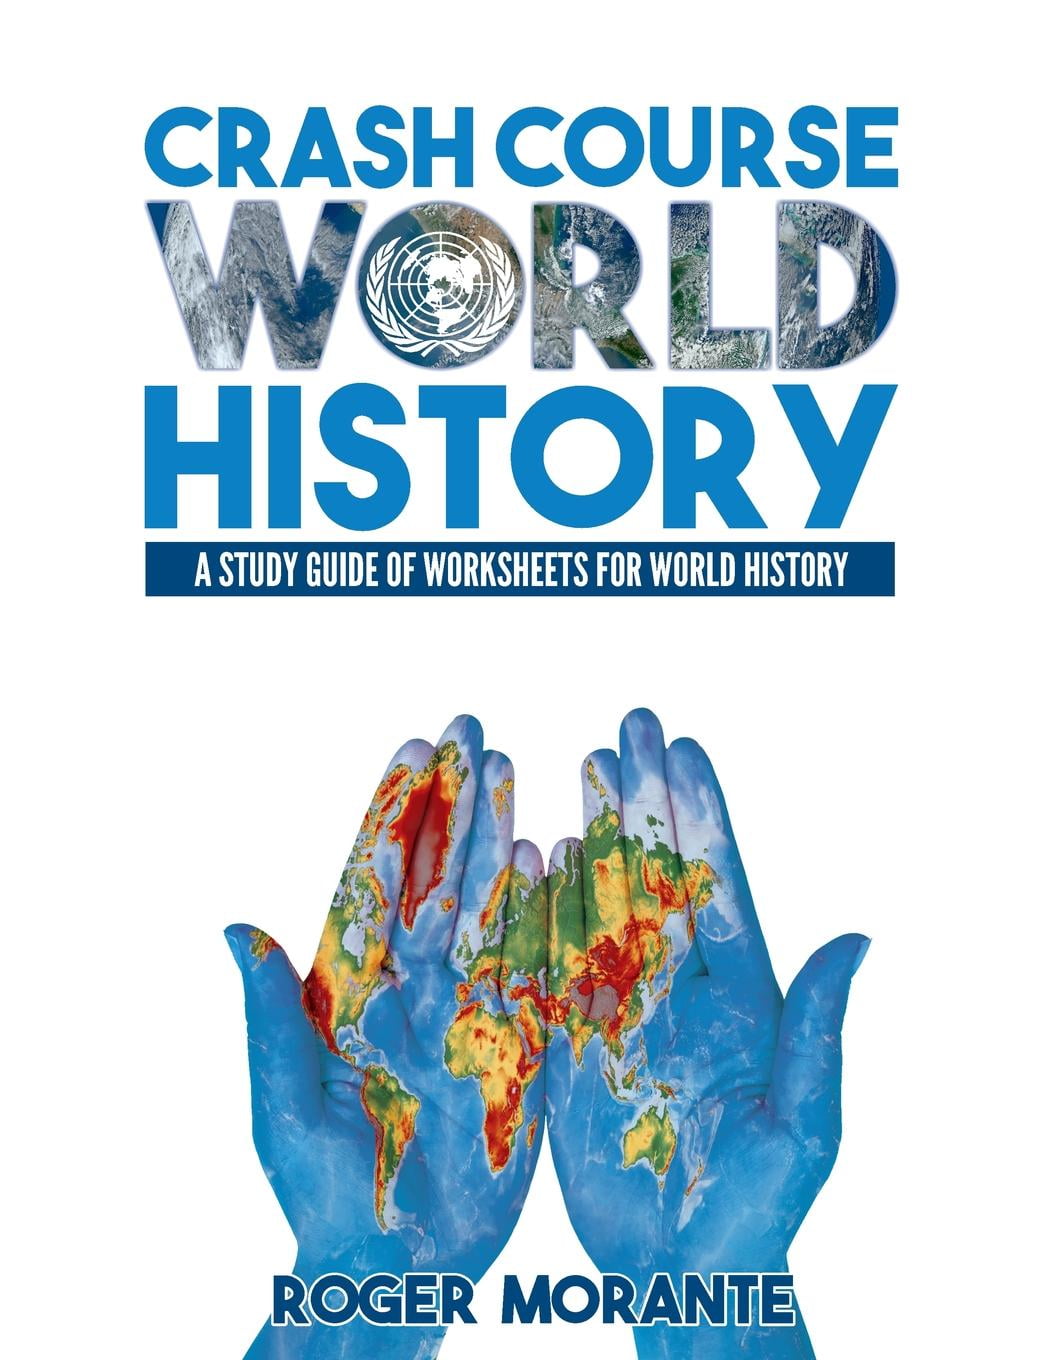 Crash Course World History 12 Worksheet Answers